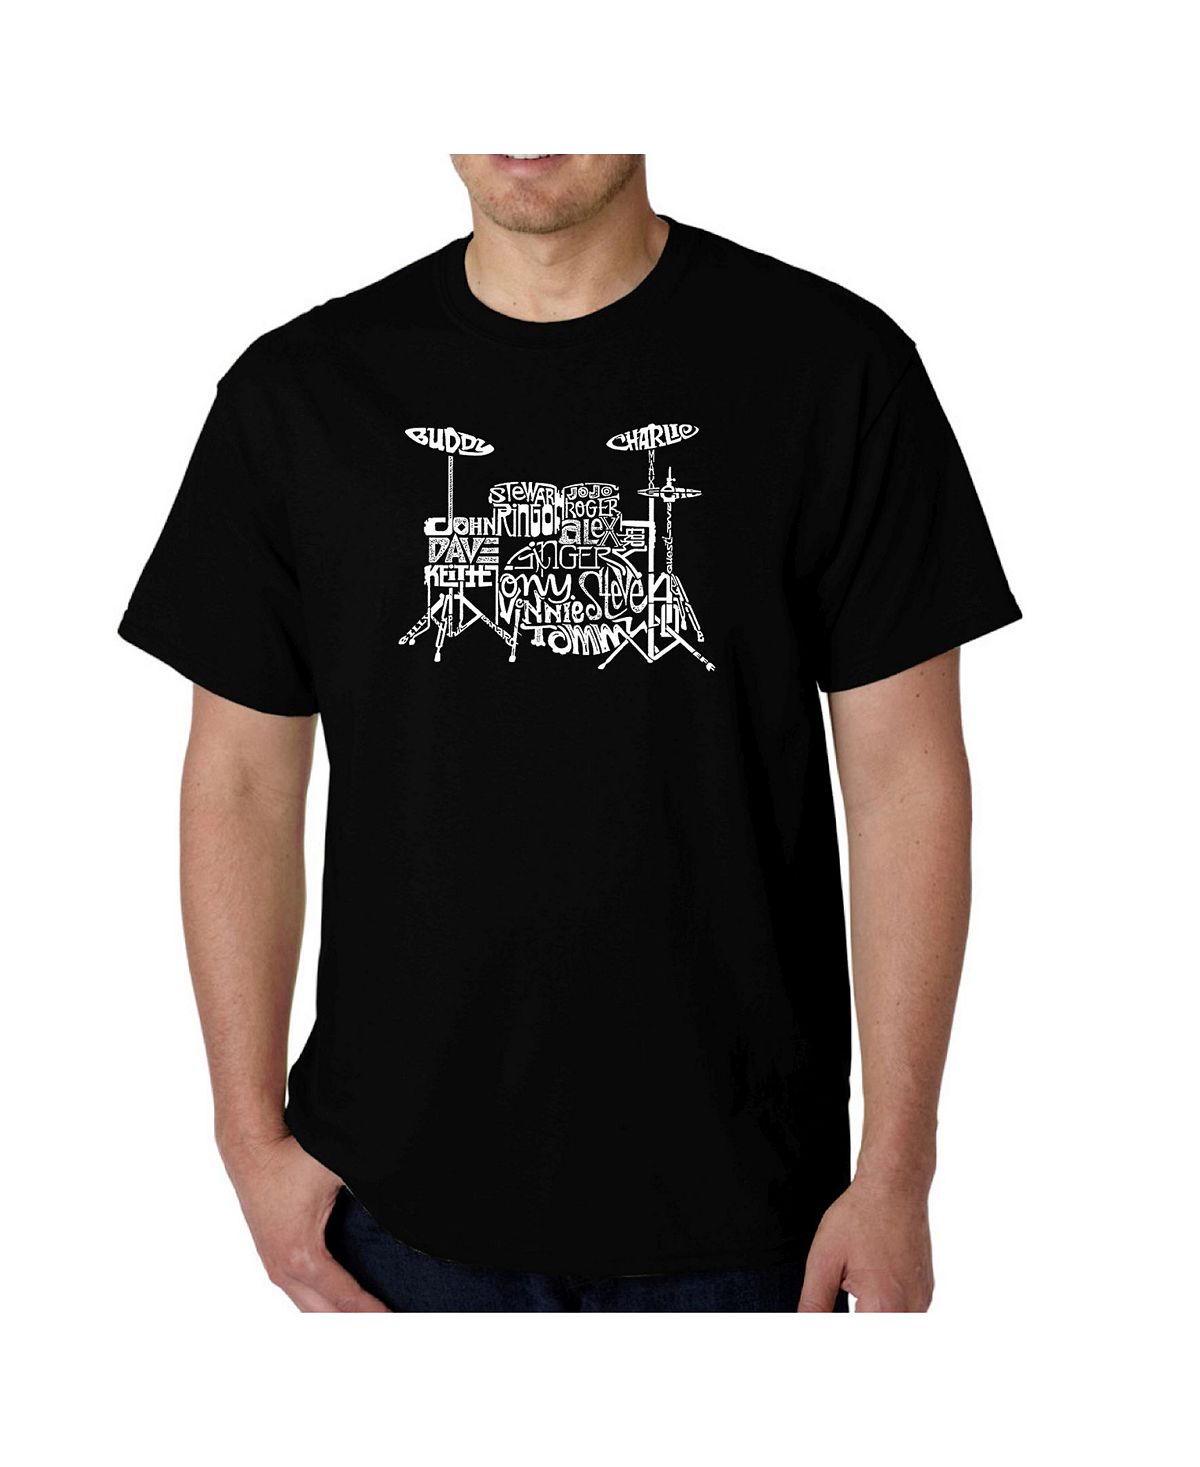 Мужская футболка с рисунком Word Art — барабаны LA Pop Art